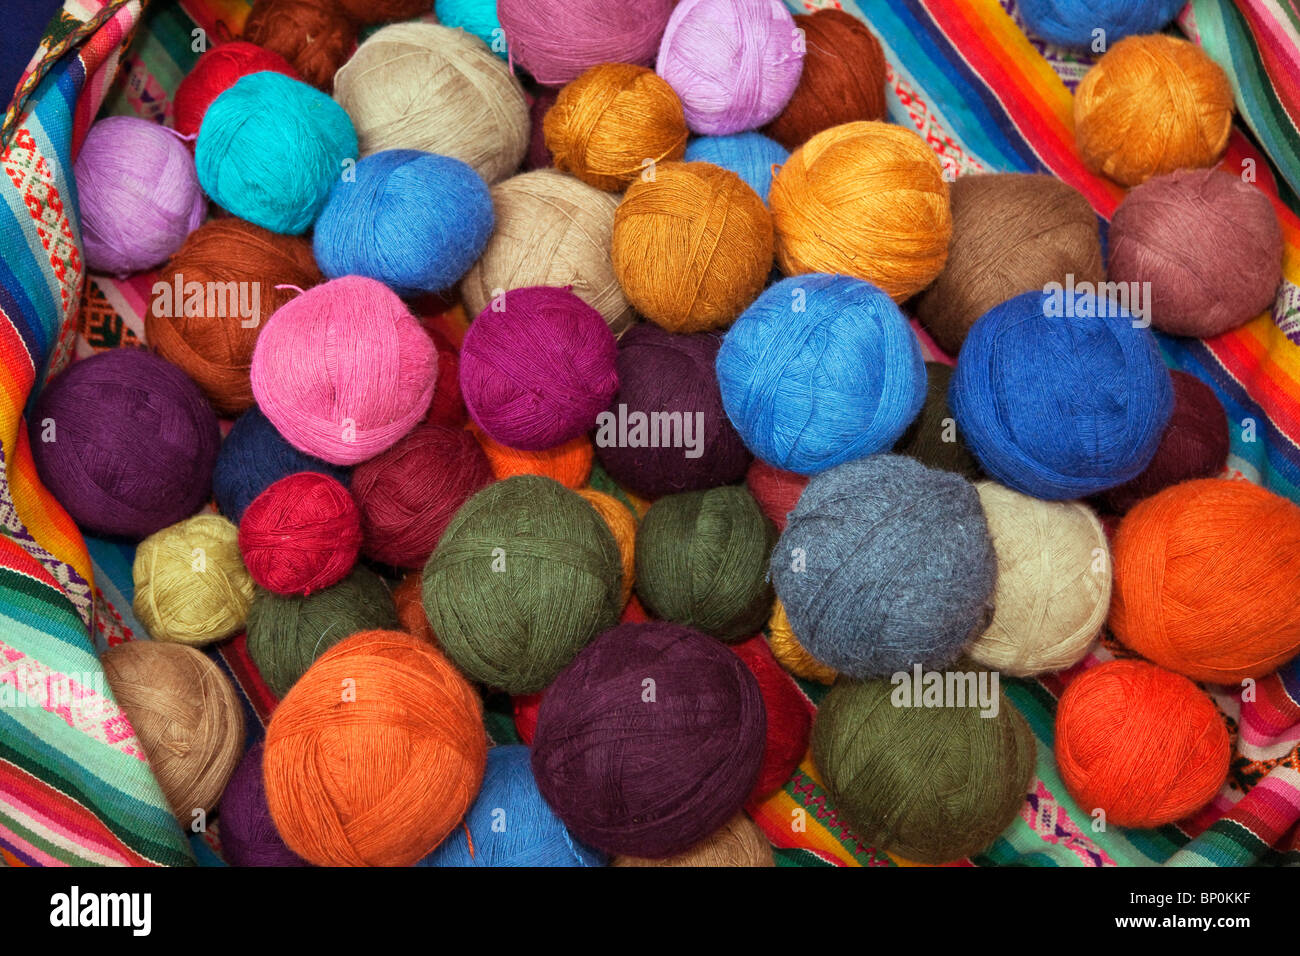 Le Pérou, des boules de laine teints en couleurs vives par Chinchero weavers en utilisant des teintures végétales à la manière traditionnelle. Banque D'Images